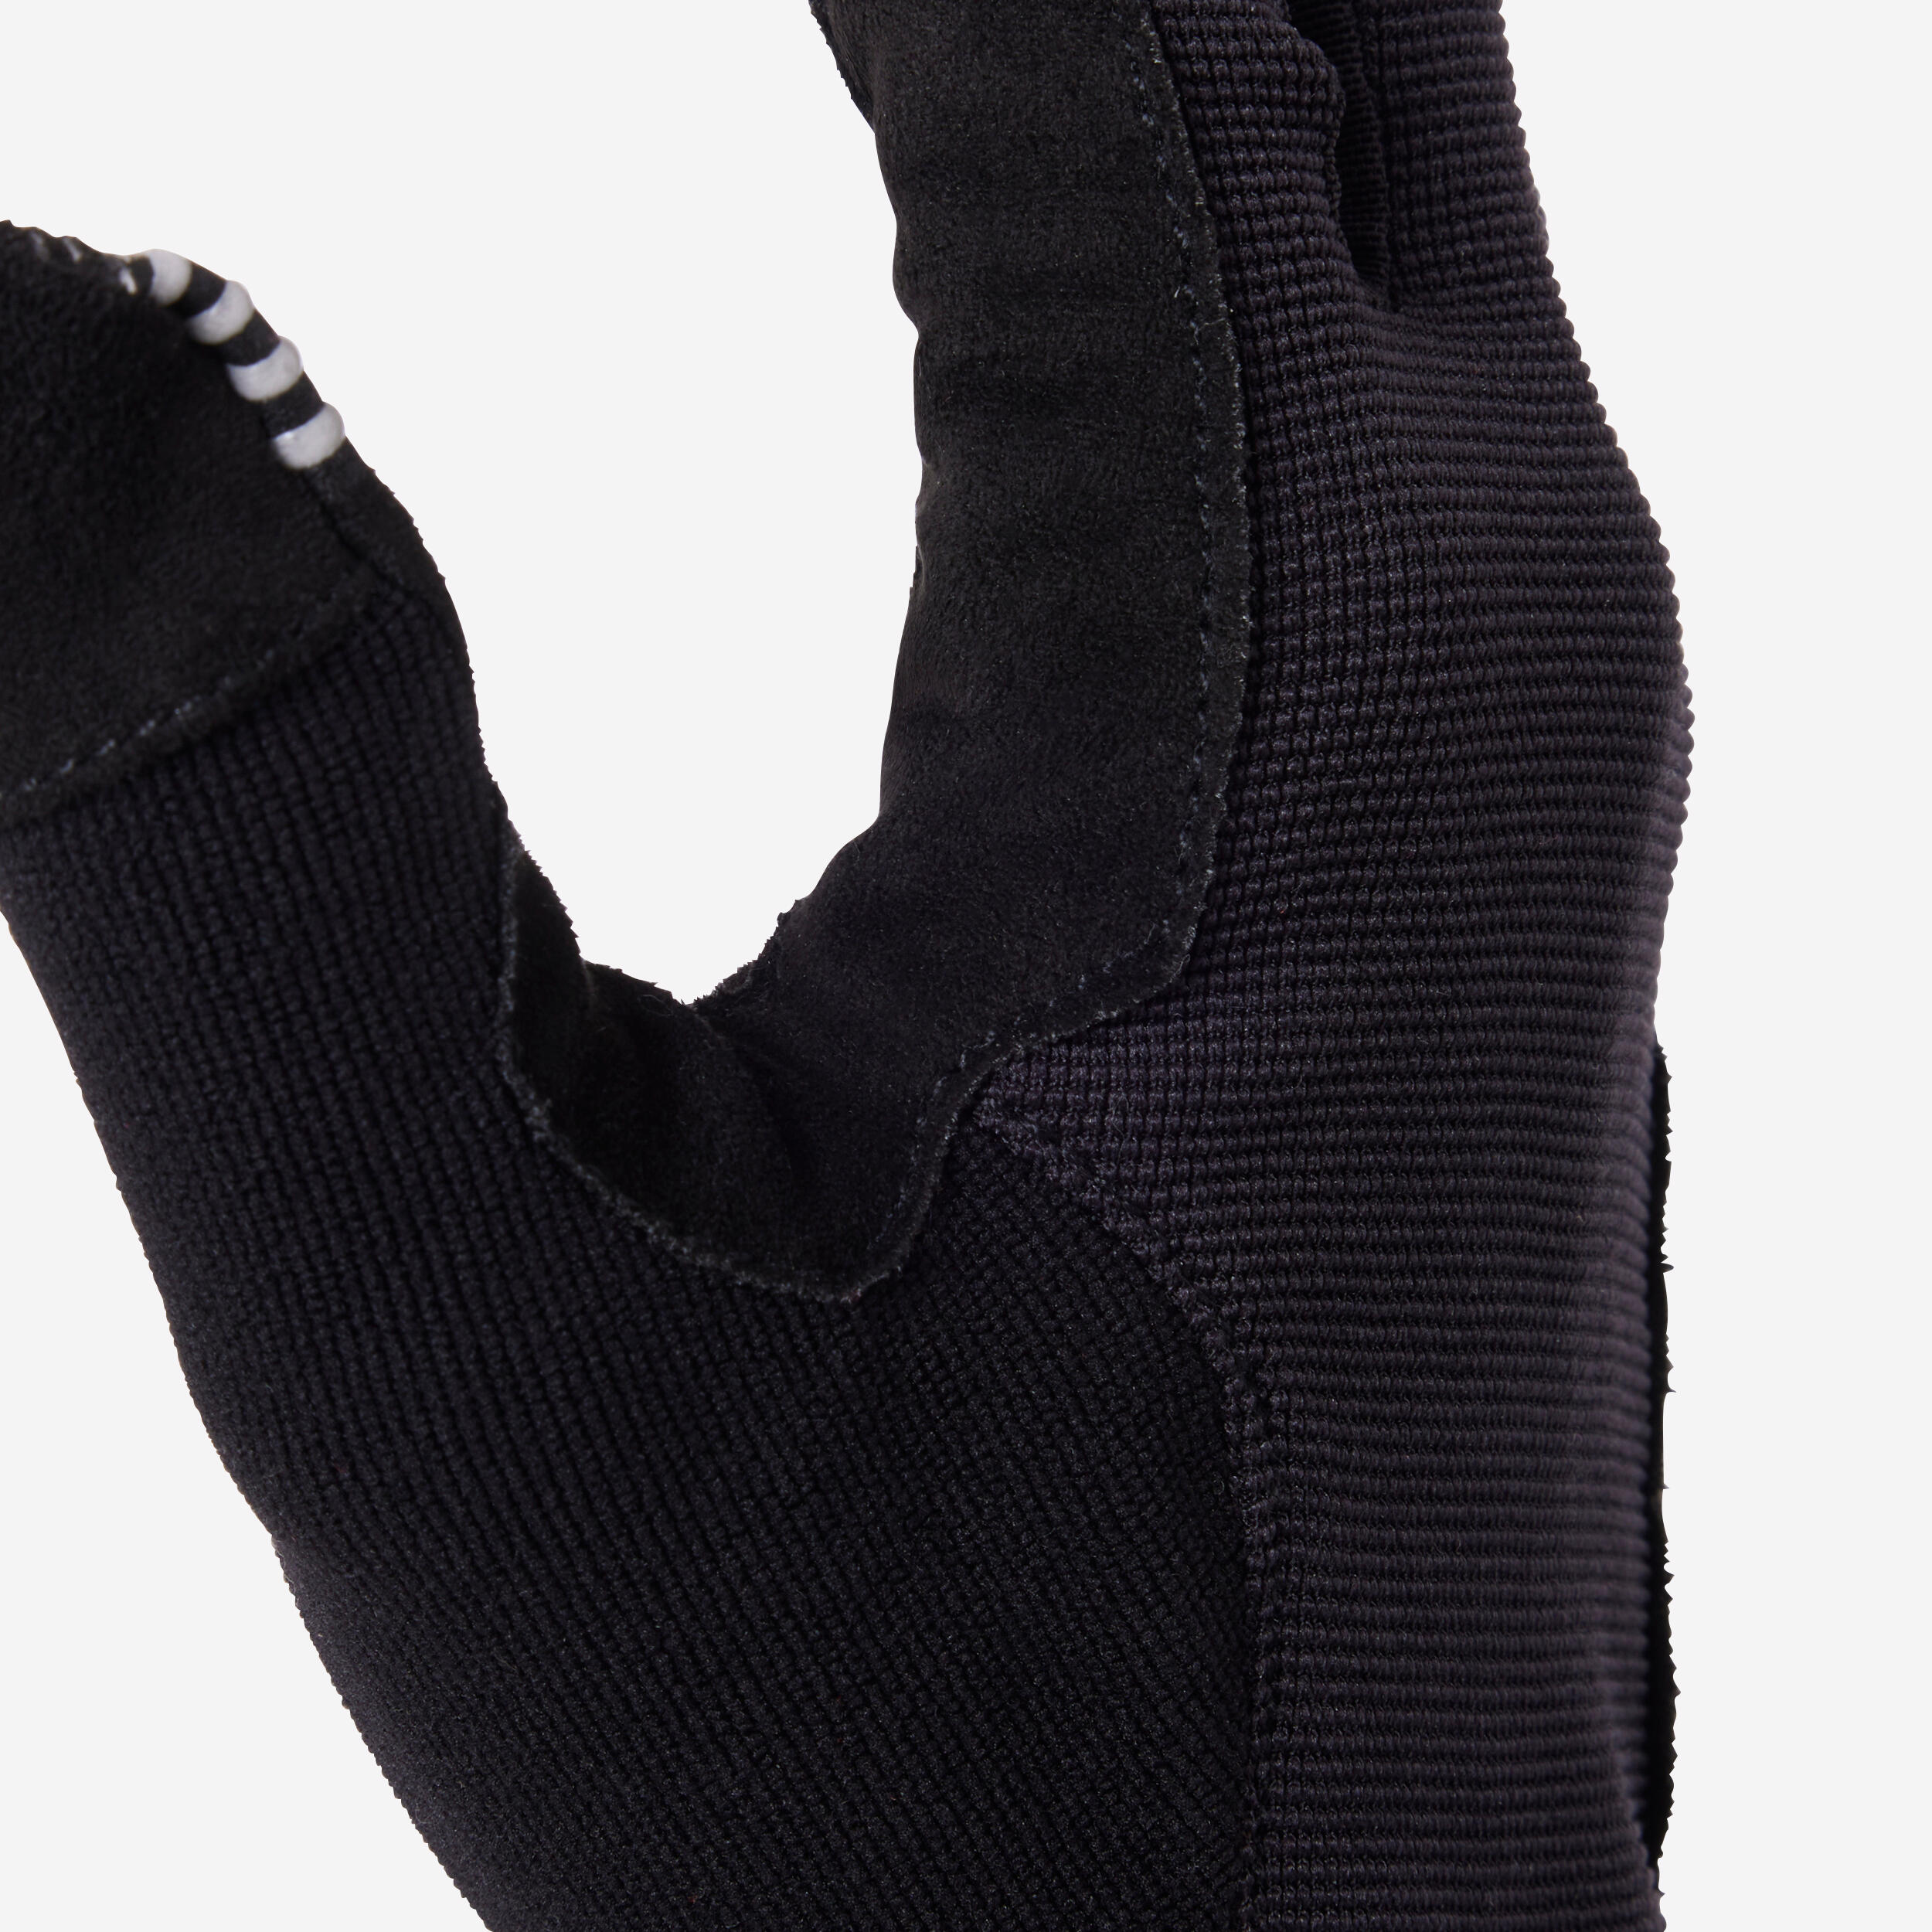 ST 100 Mountain Bike Gloves - Black 5/9